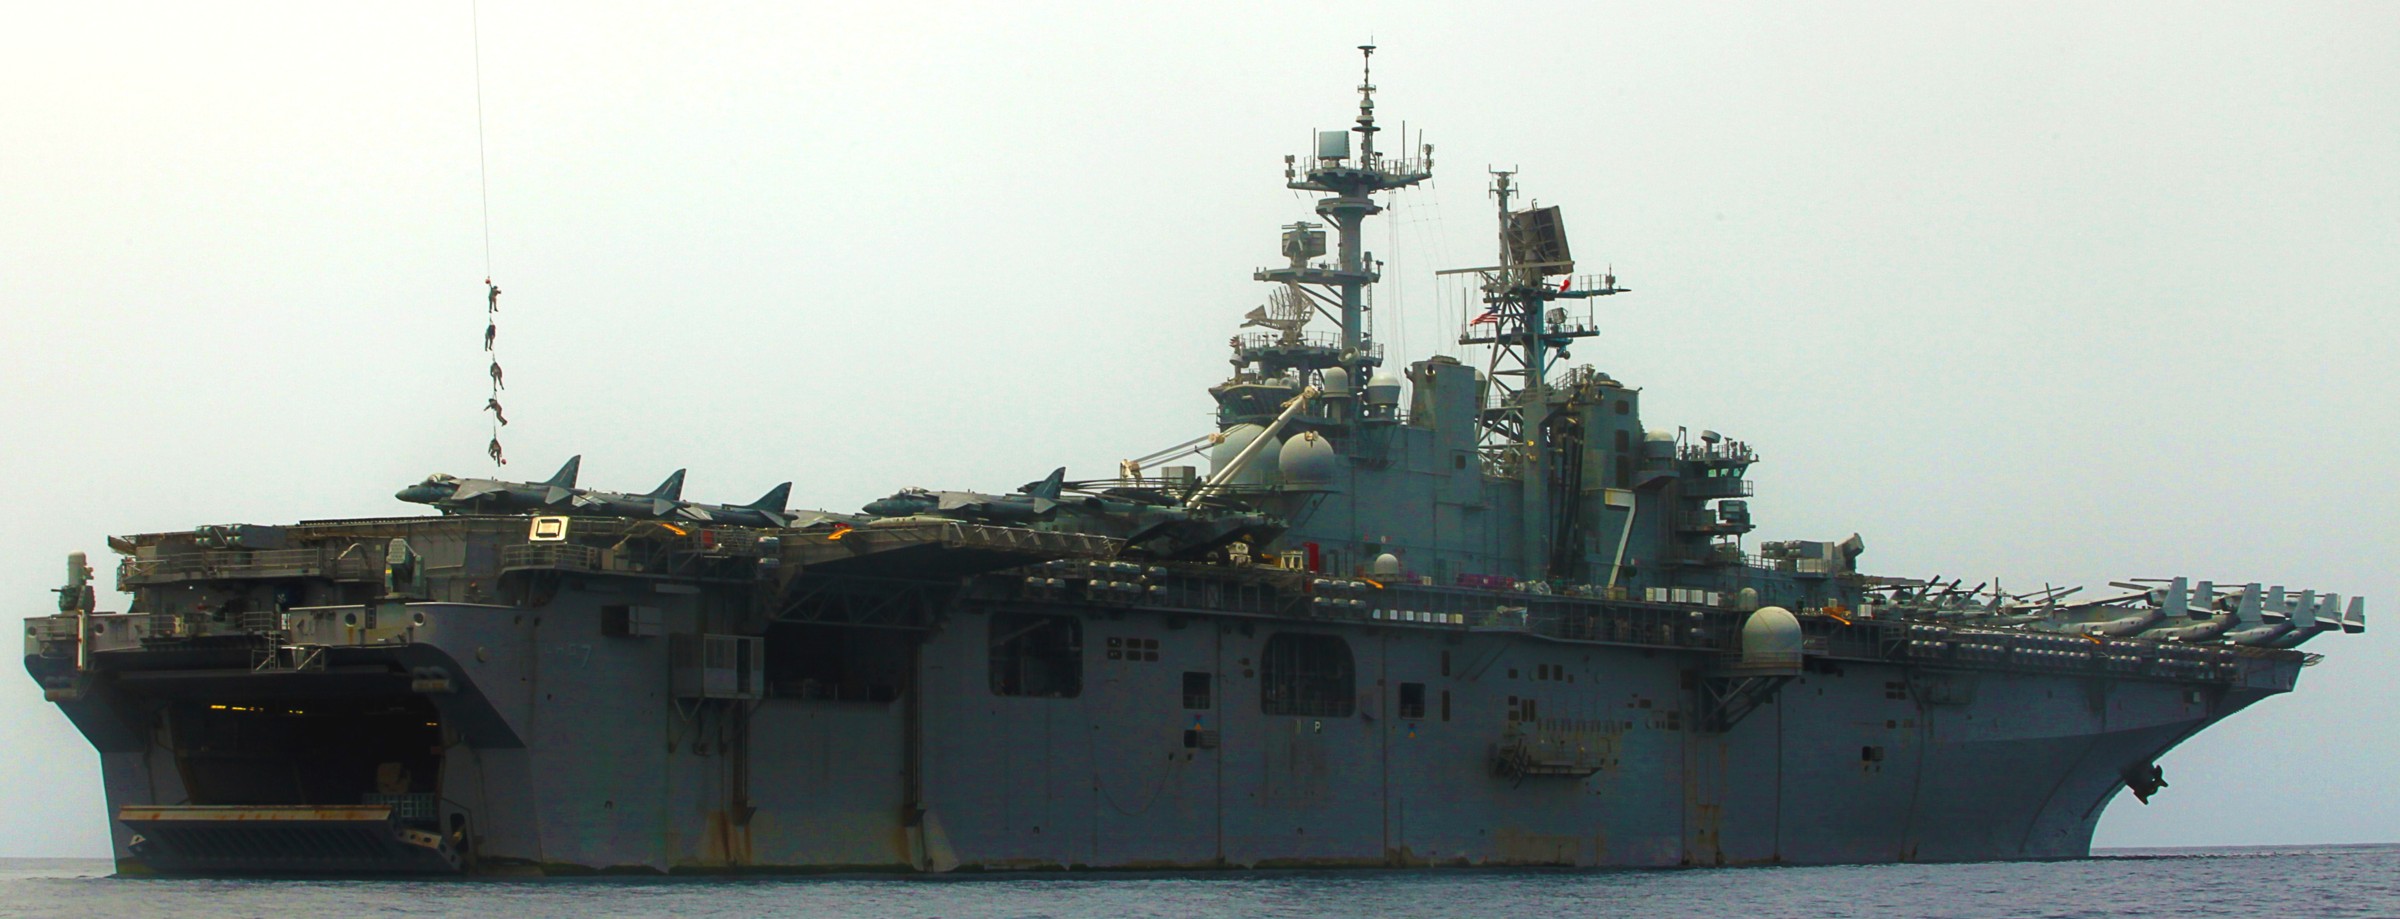 lhd-7 uss iwo jima wasp class amphibious assault ship dock landing helicopter us navy vmm-365 marines gulf of aden 126